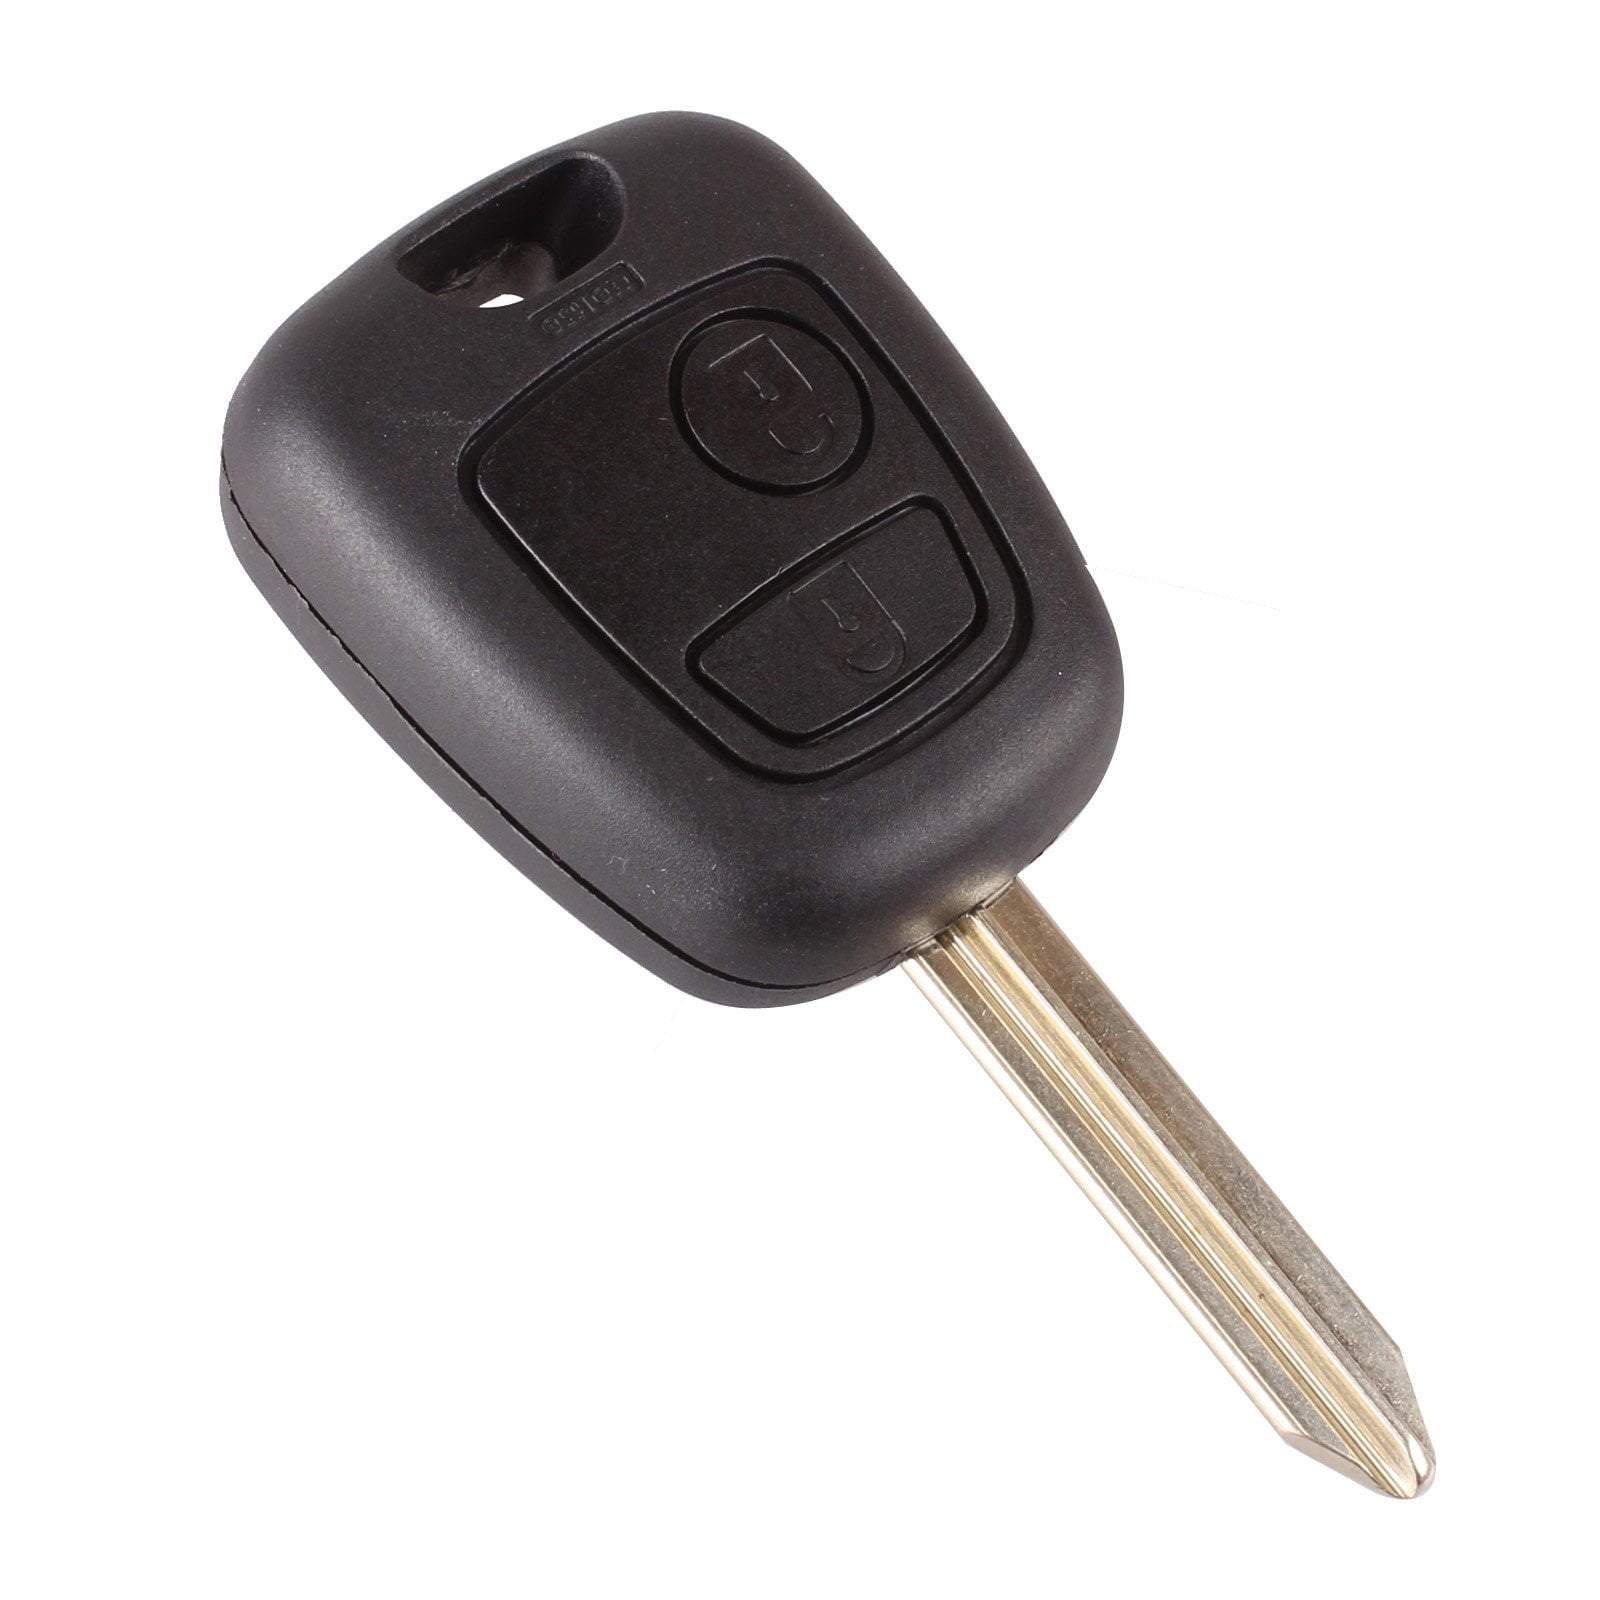 Fekete színű, 2 gombos Citroen kulcs, kulcsház SX9 kulcsszárral.